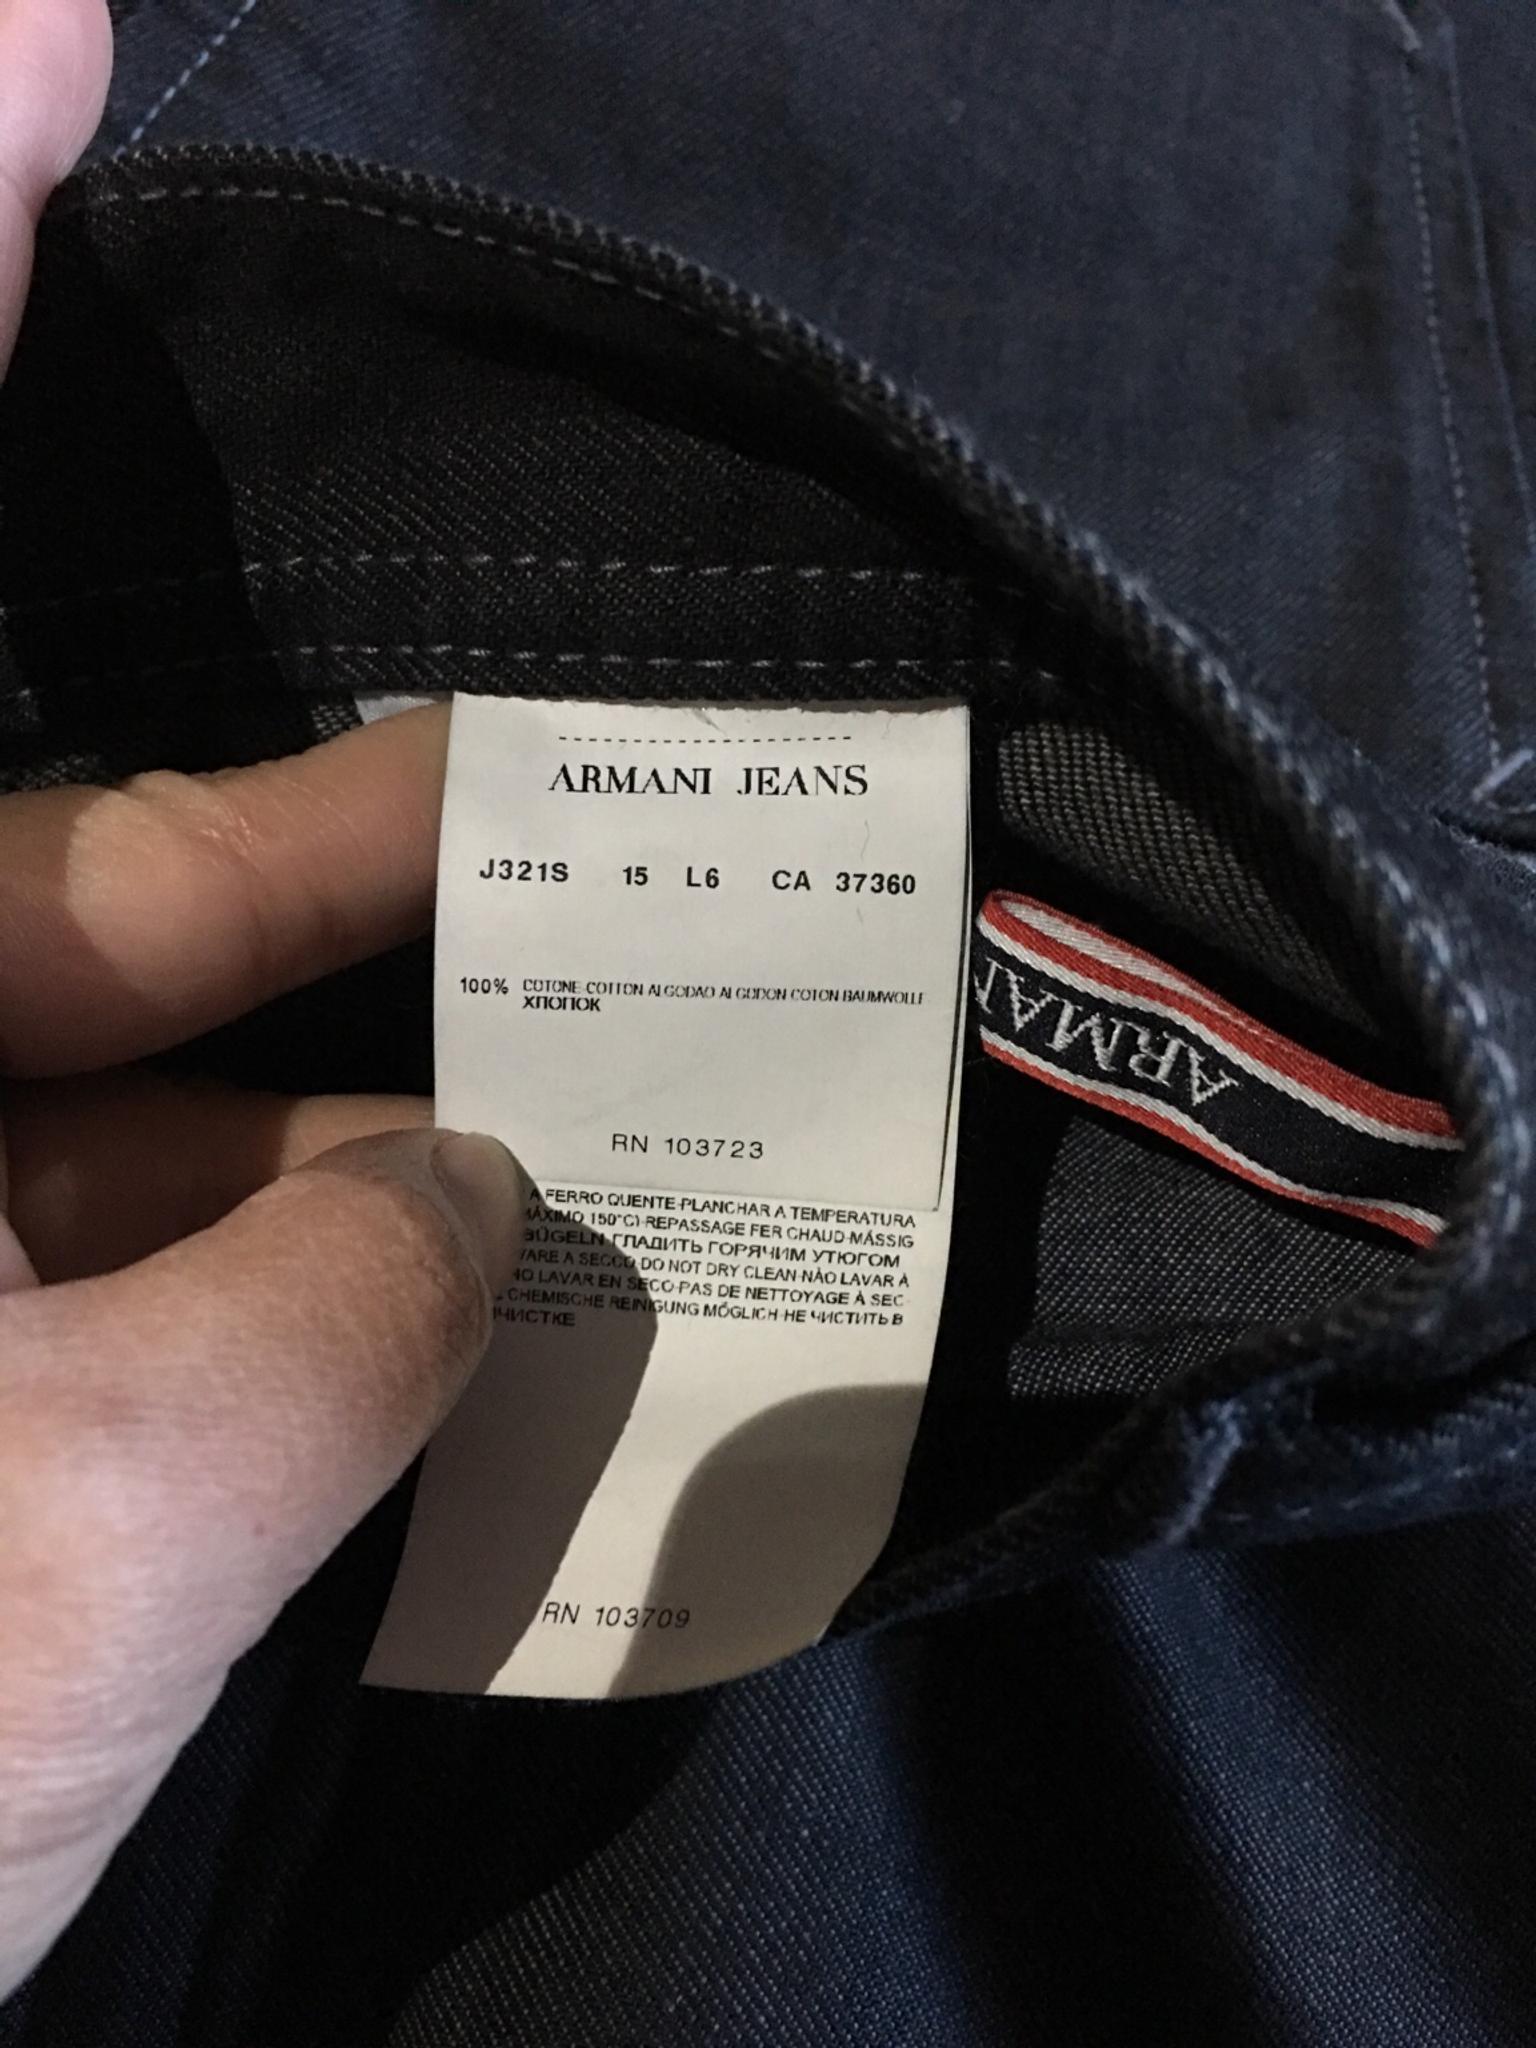 armani jeans rn 103723 ca 37360